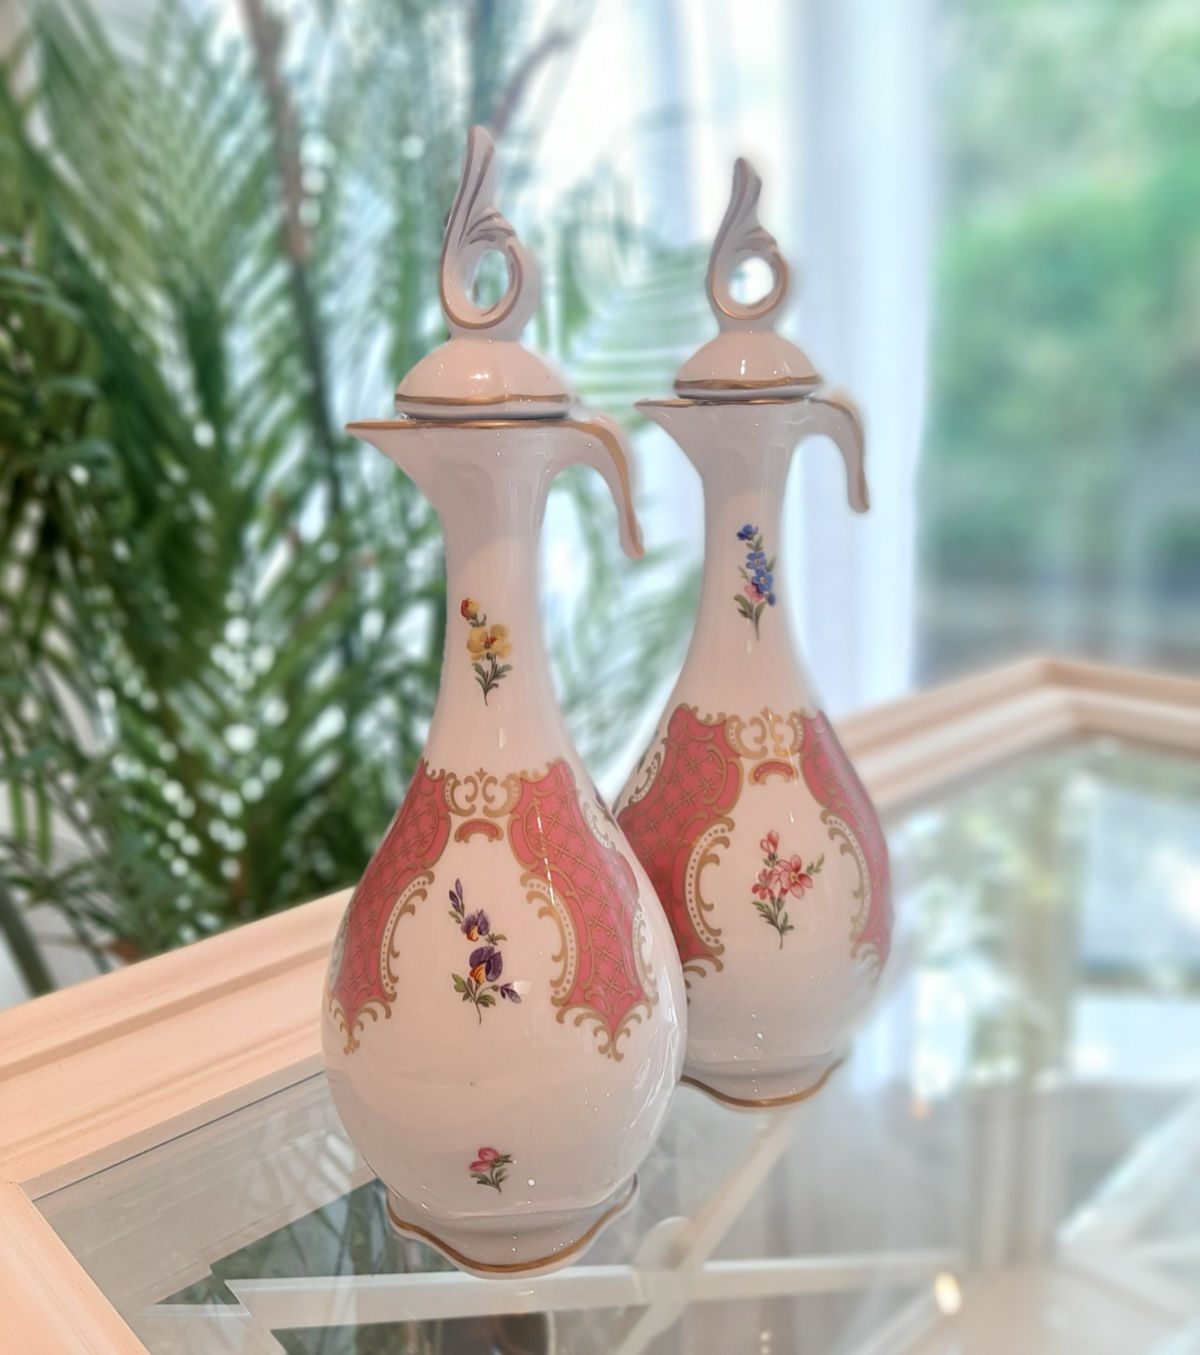 Essig- und Ölkännchen von Lindner Porzellan, handbemalt mit Blumenmotiv, Set.